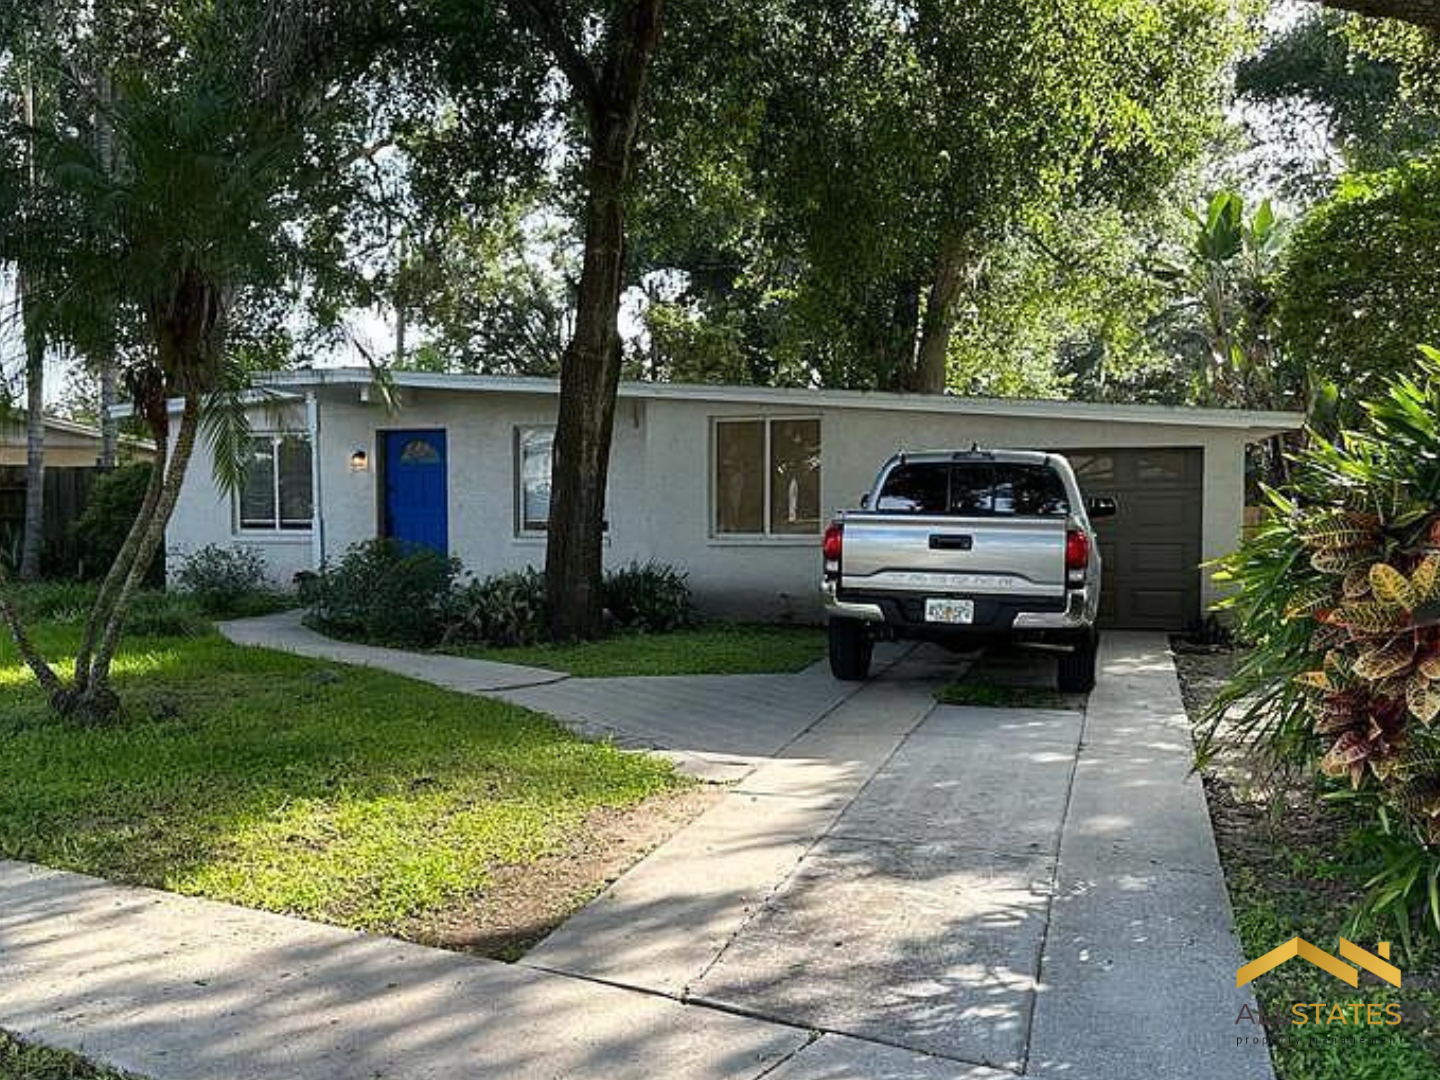 Photo of property: 732 Clayton St, Brandon, FL 33511